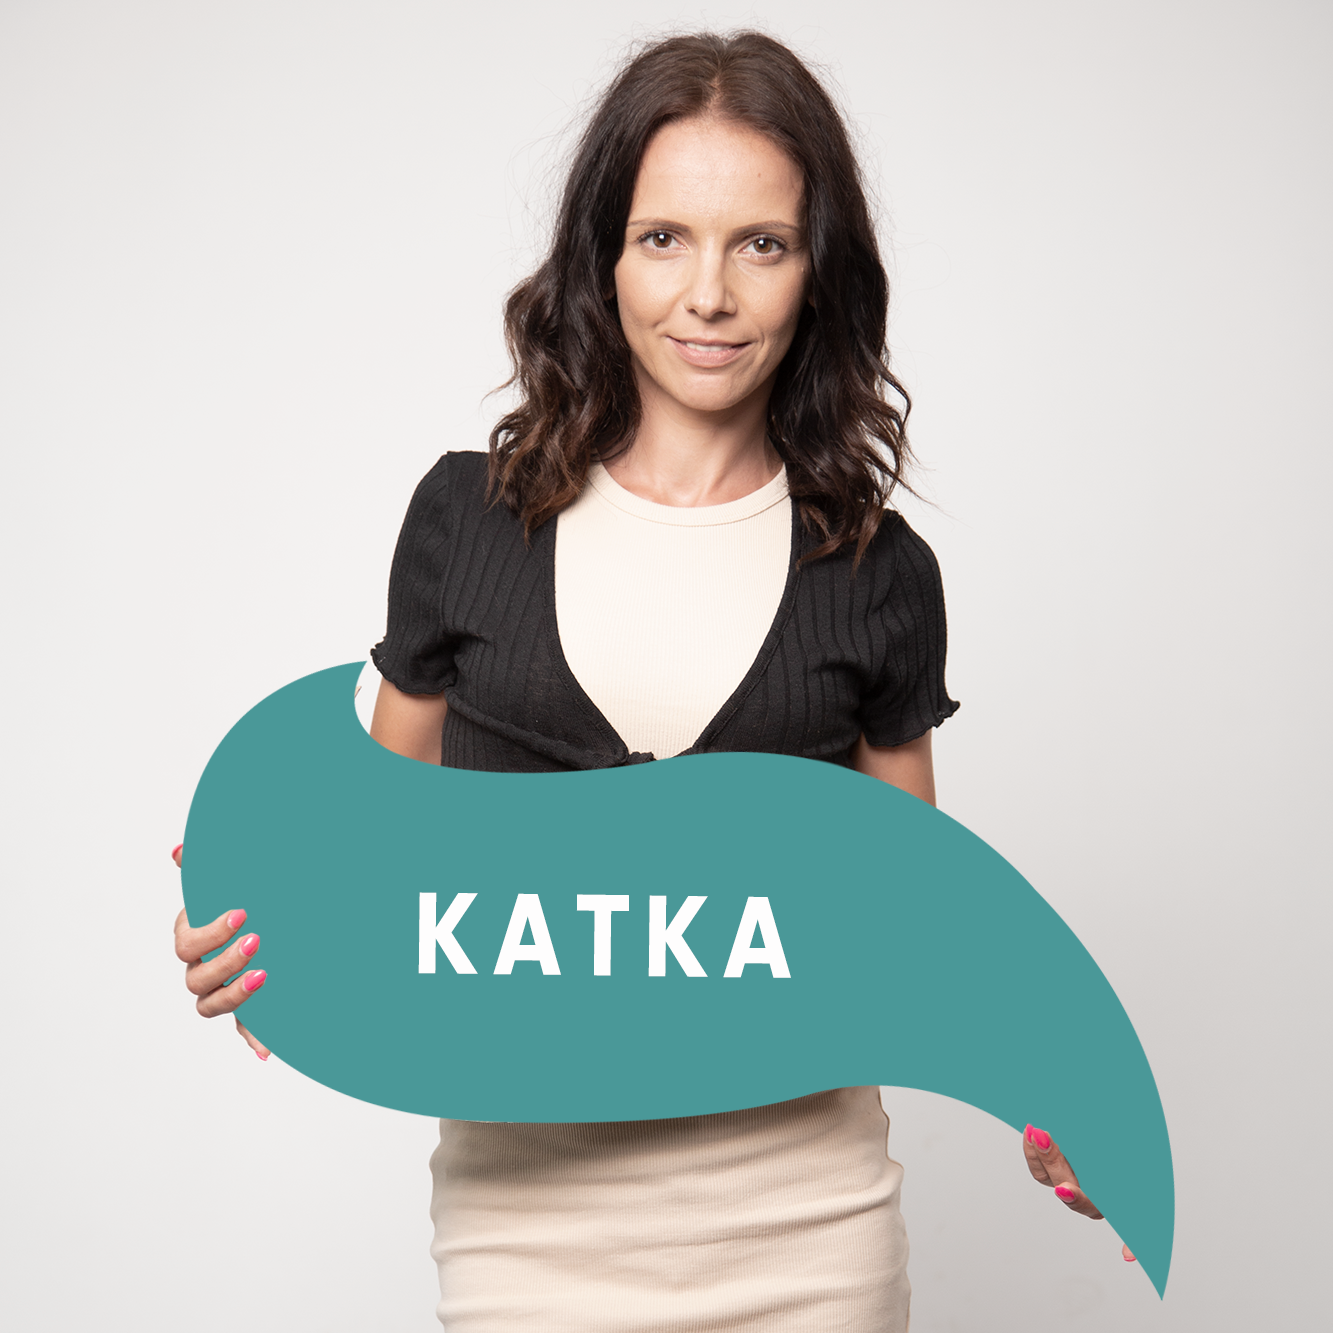 Katka_katka